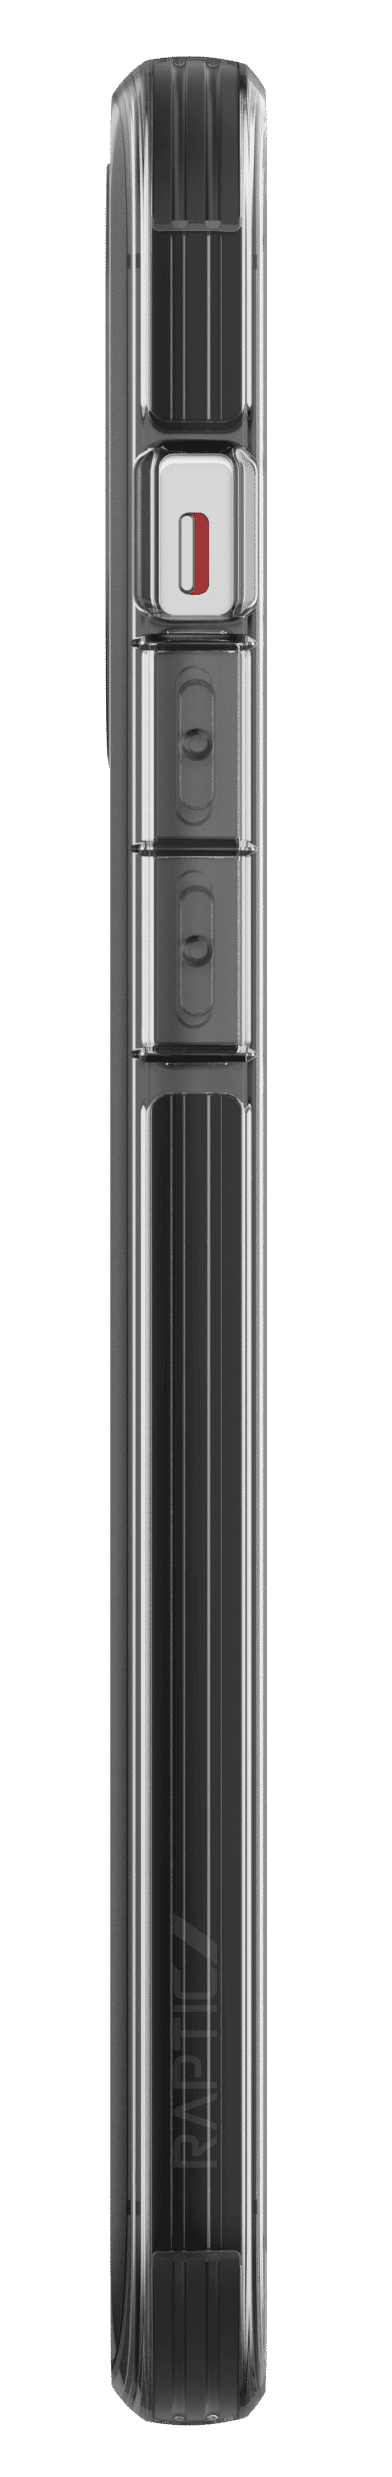 เคส X-Doria รุ่น Raptic Clear - iPhone 12 / 12 Pro - ดำใส